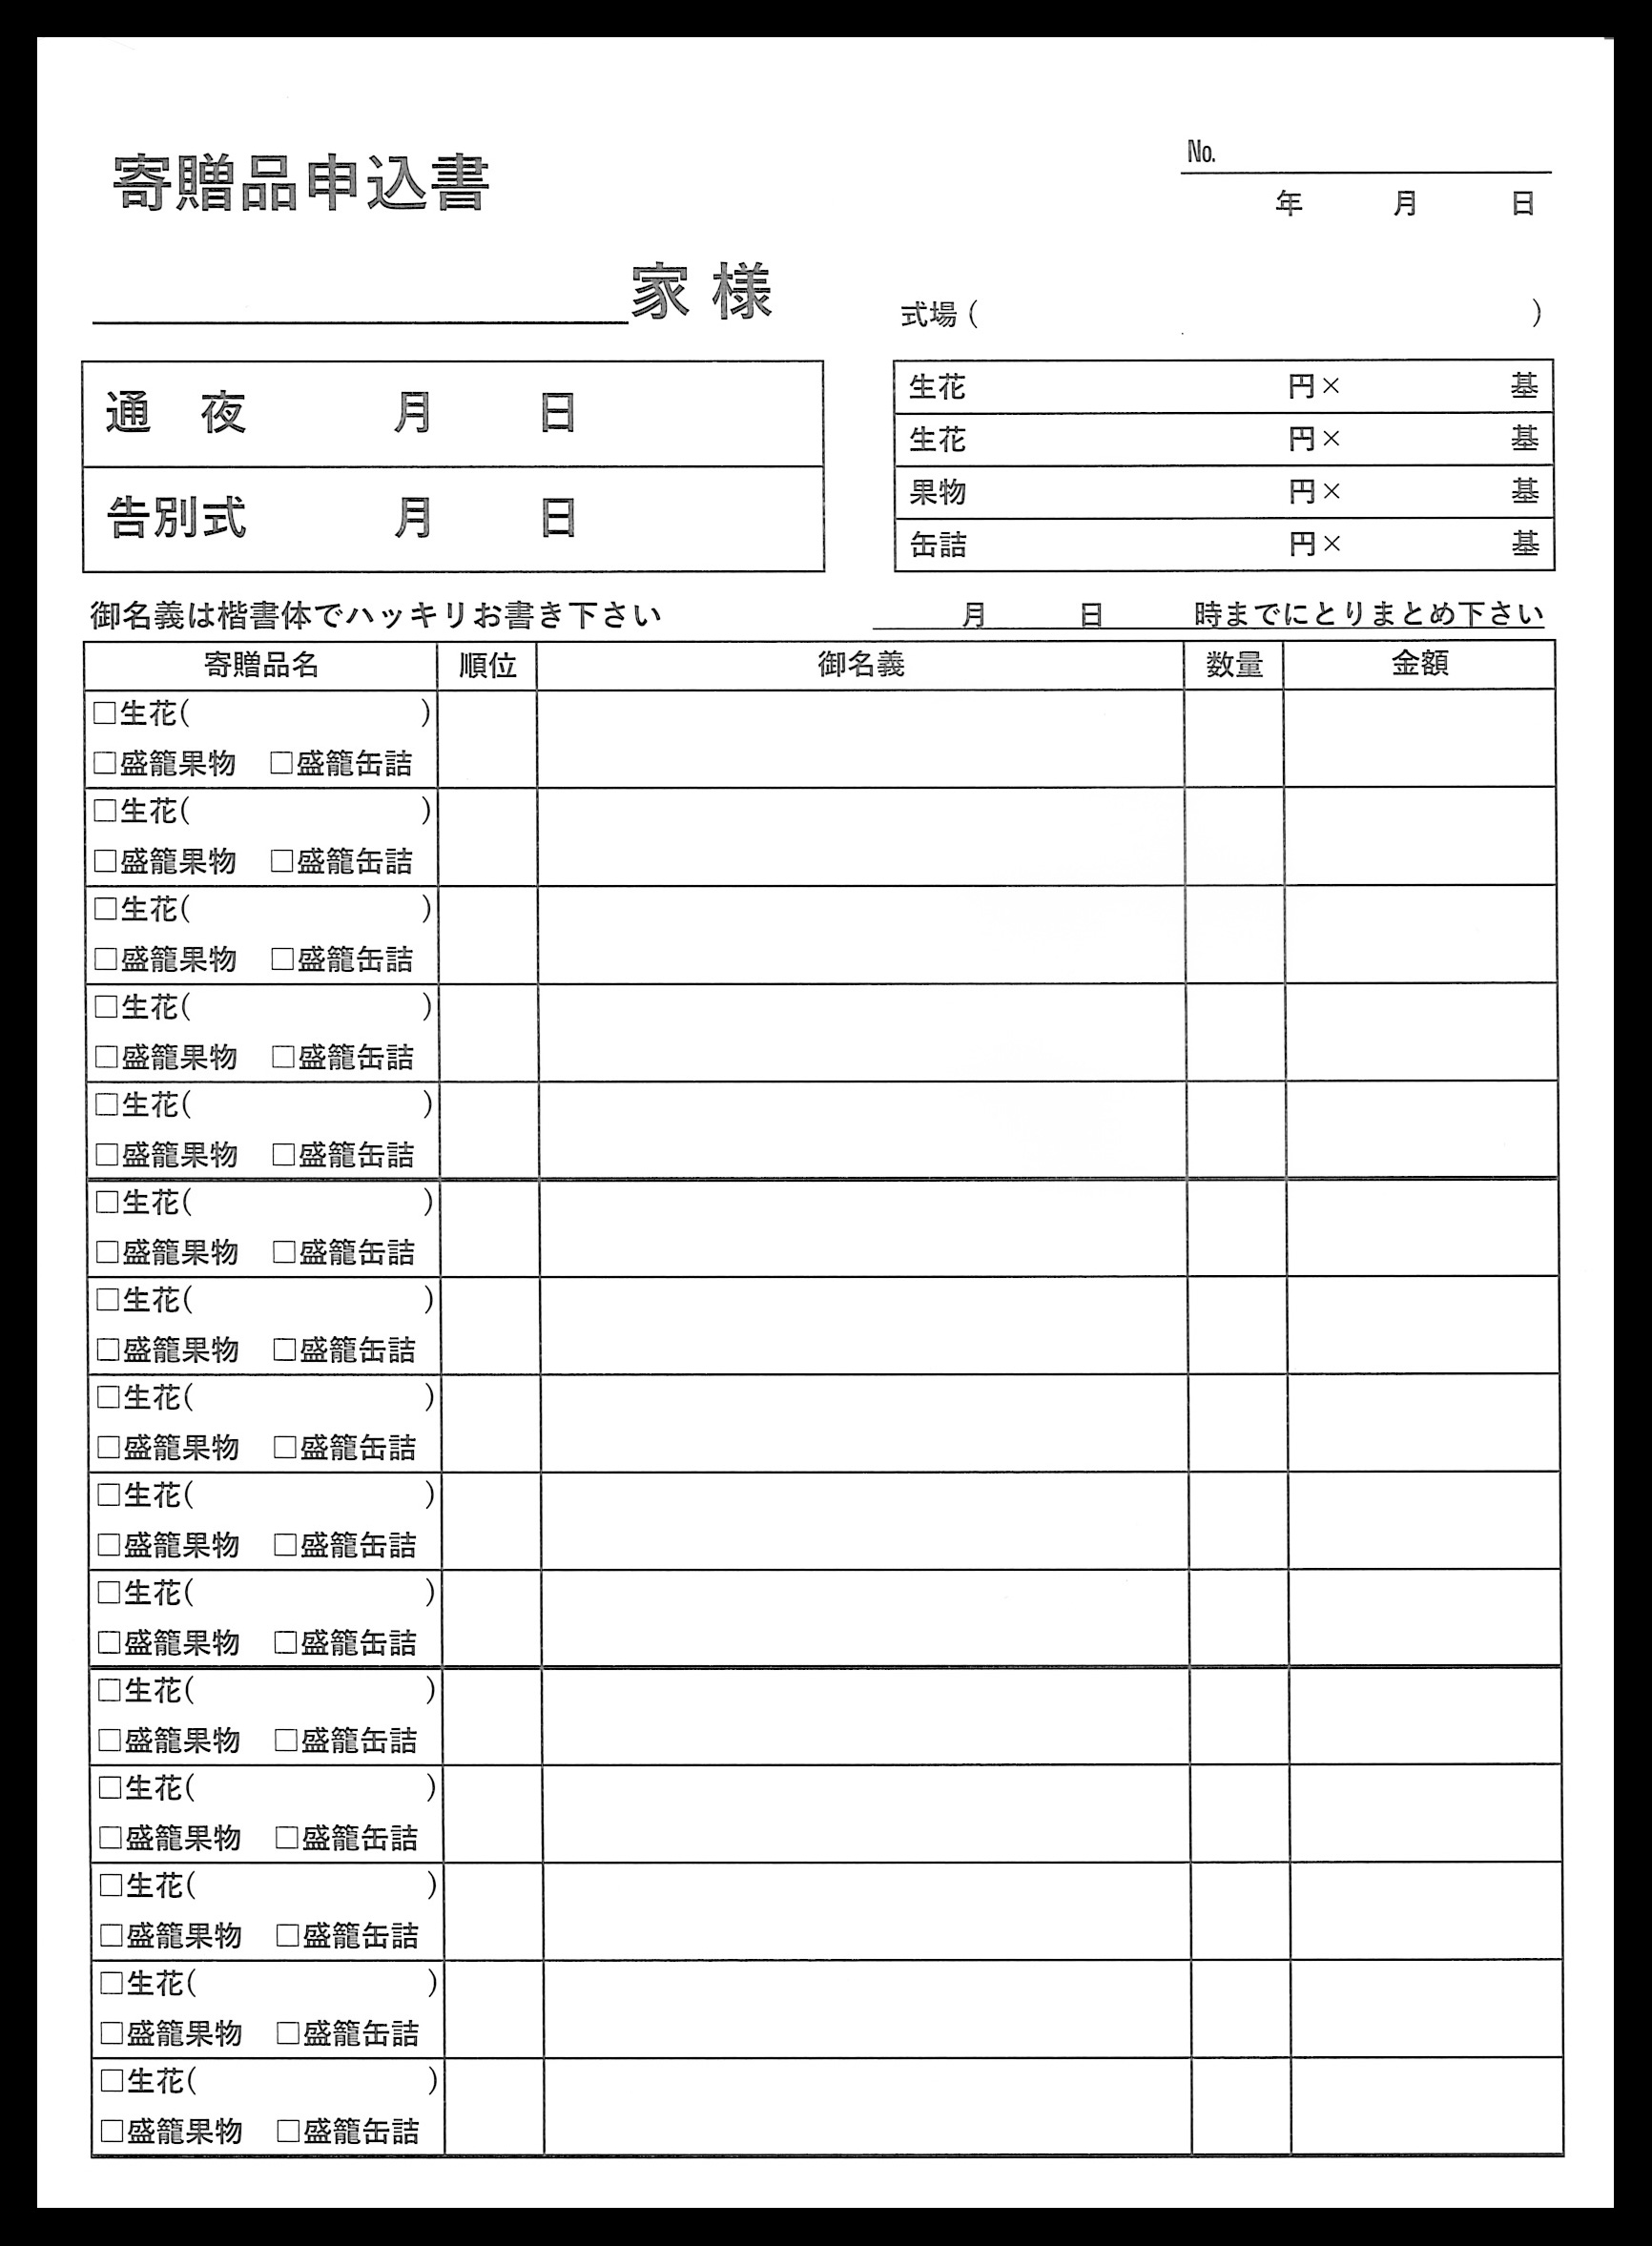 葬祭業で使用する寄贈品申込書伝票(２枚複写)の伝票作成実績